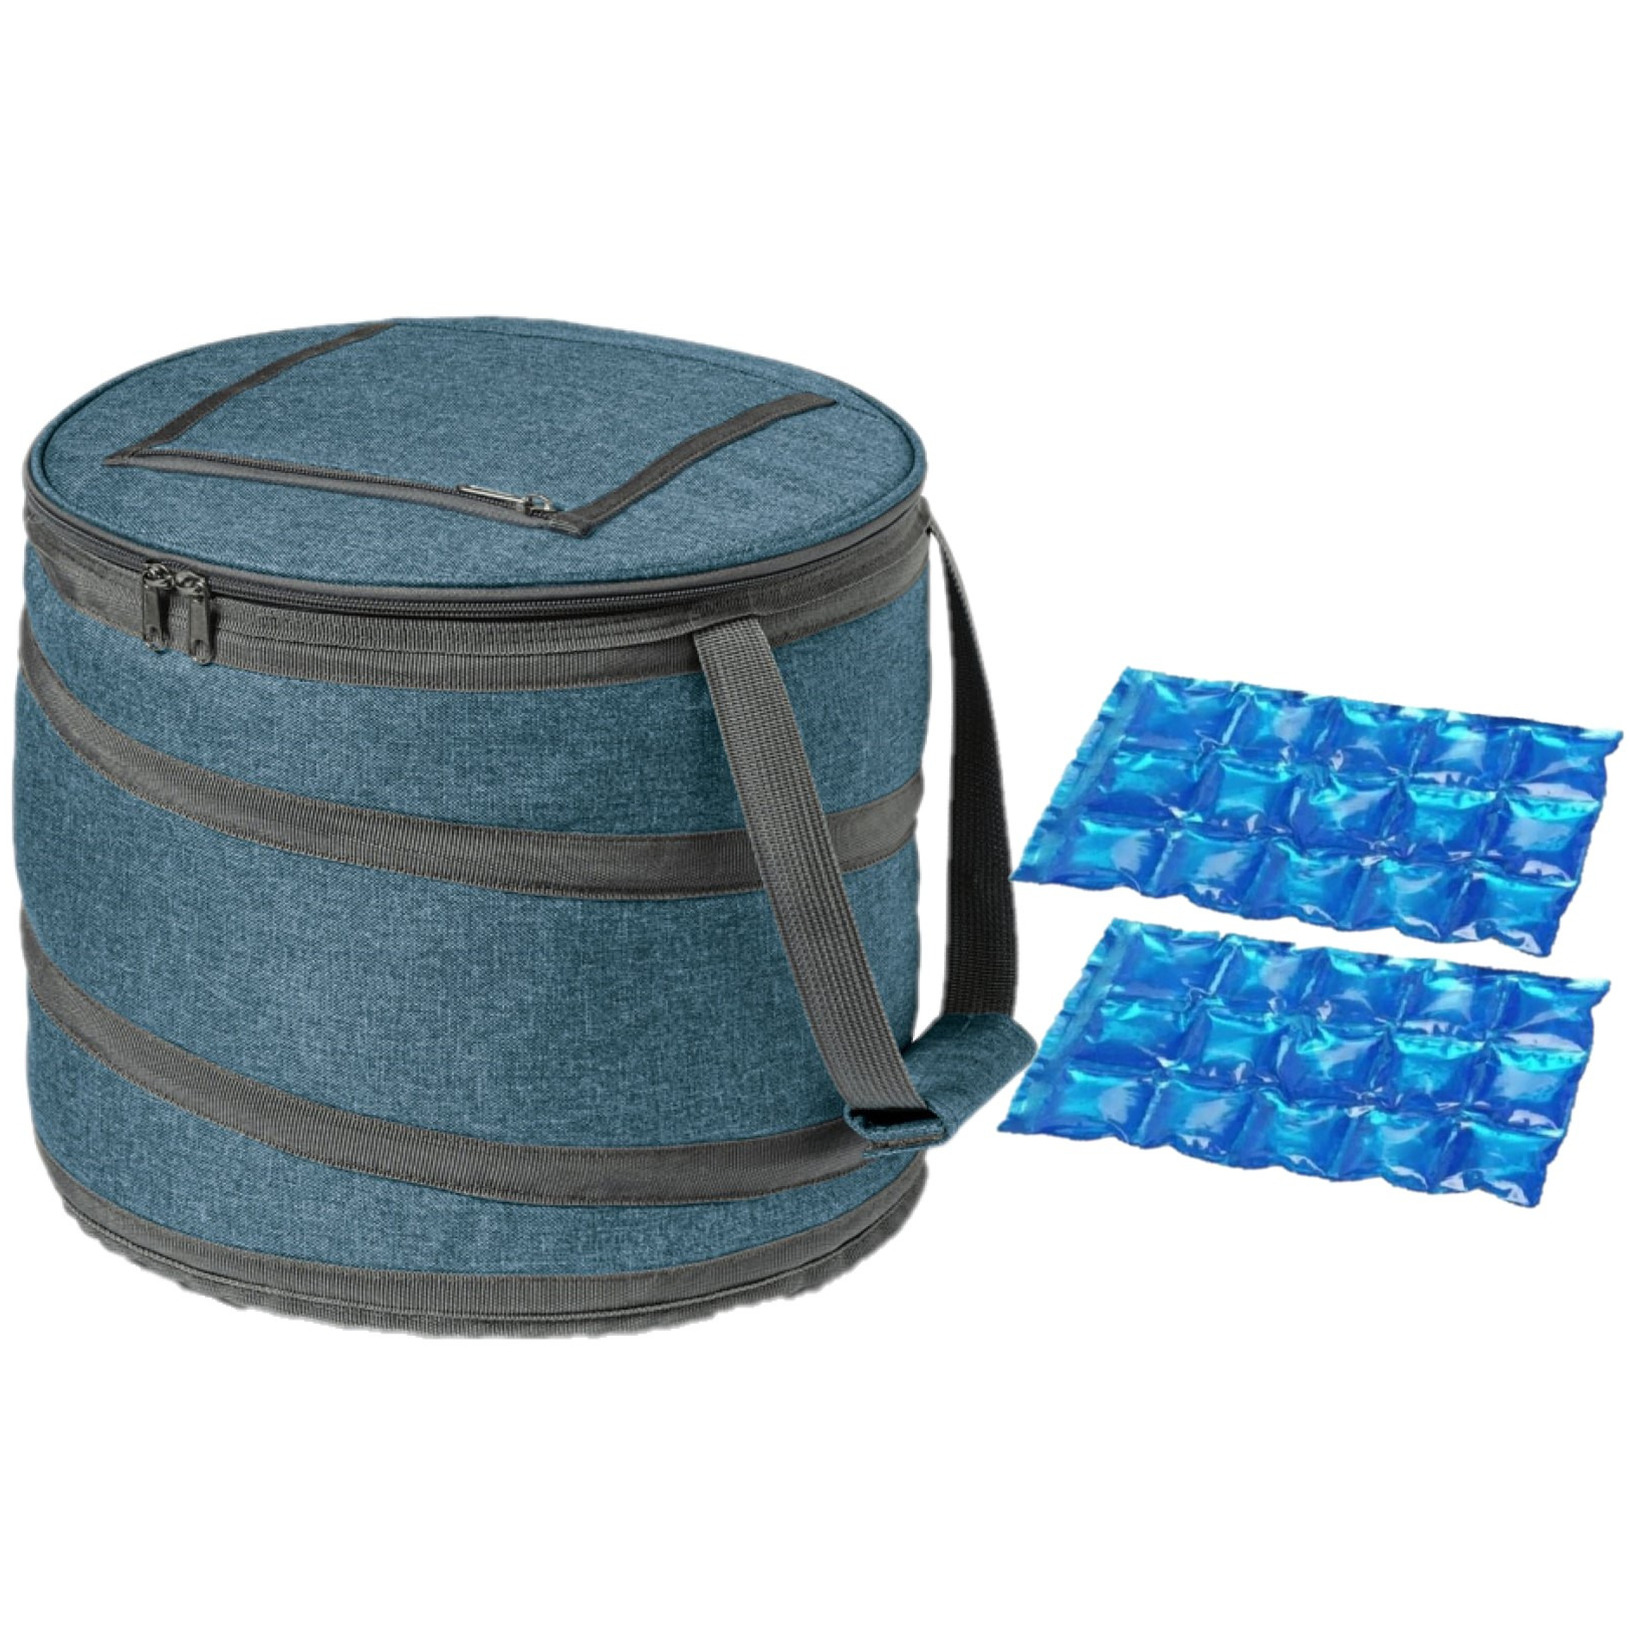 Opvouwbare koeltas blauw/grijs met 2 stuks flexibele koelelementen 15 liter -